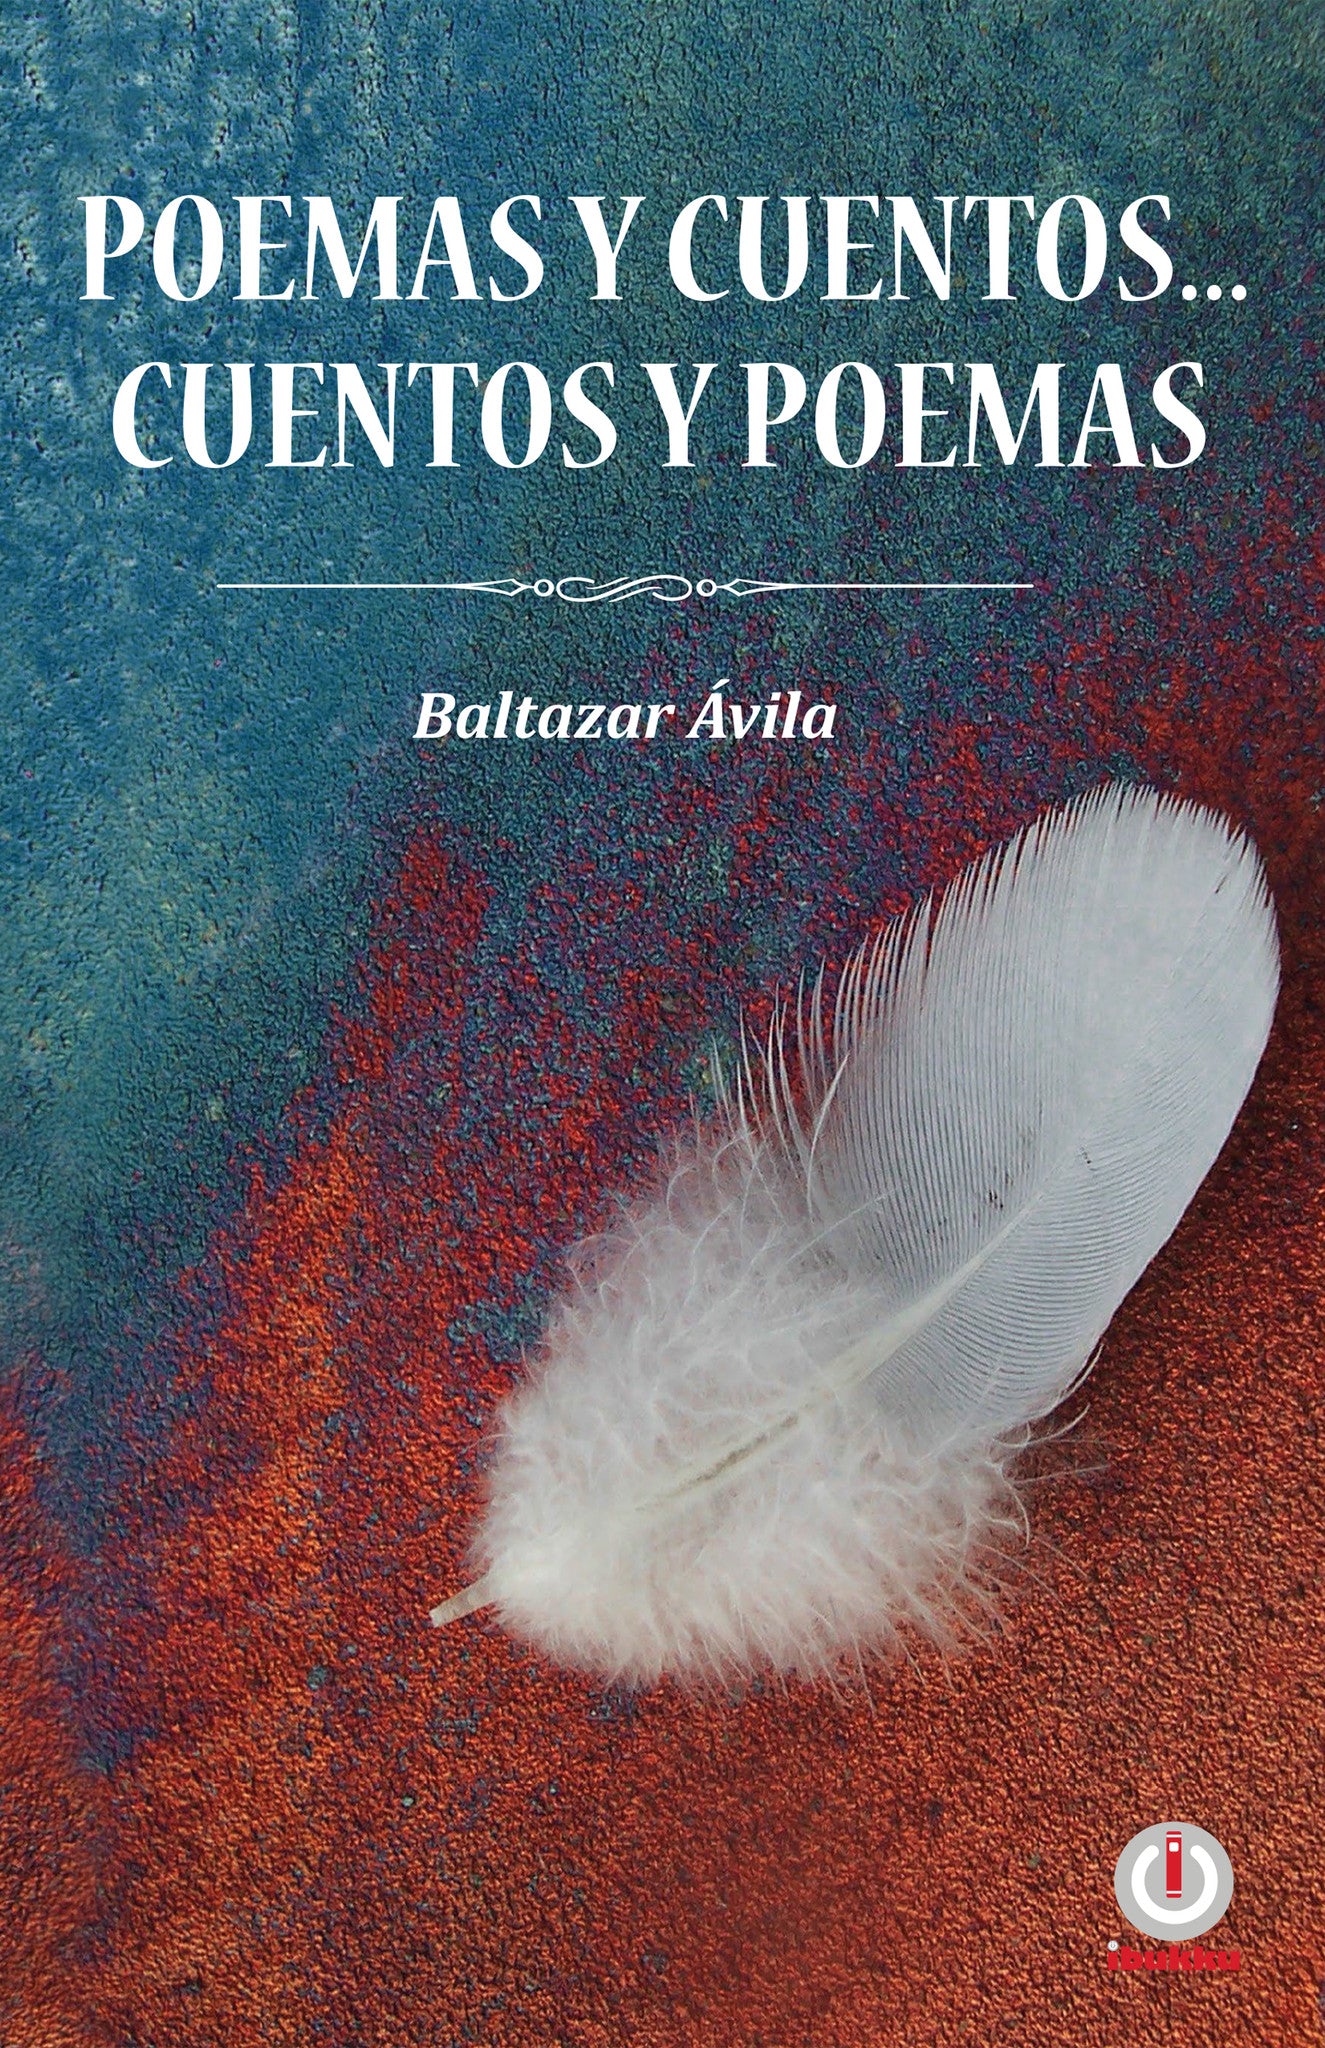 Poemas y cuentos... cuentos y poemas - ibukku, LLC